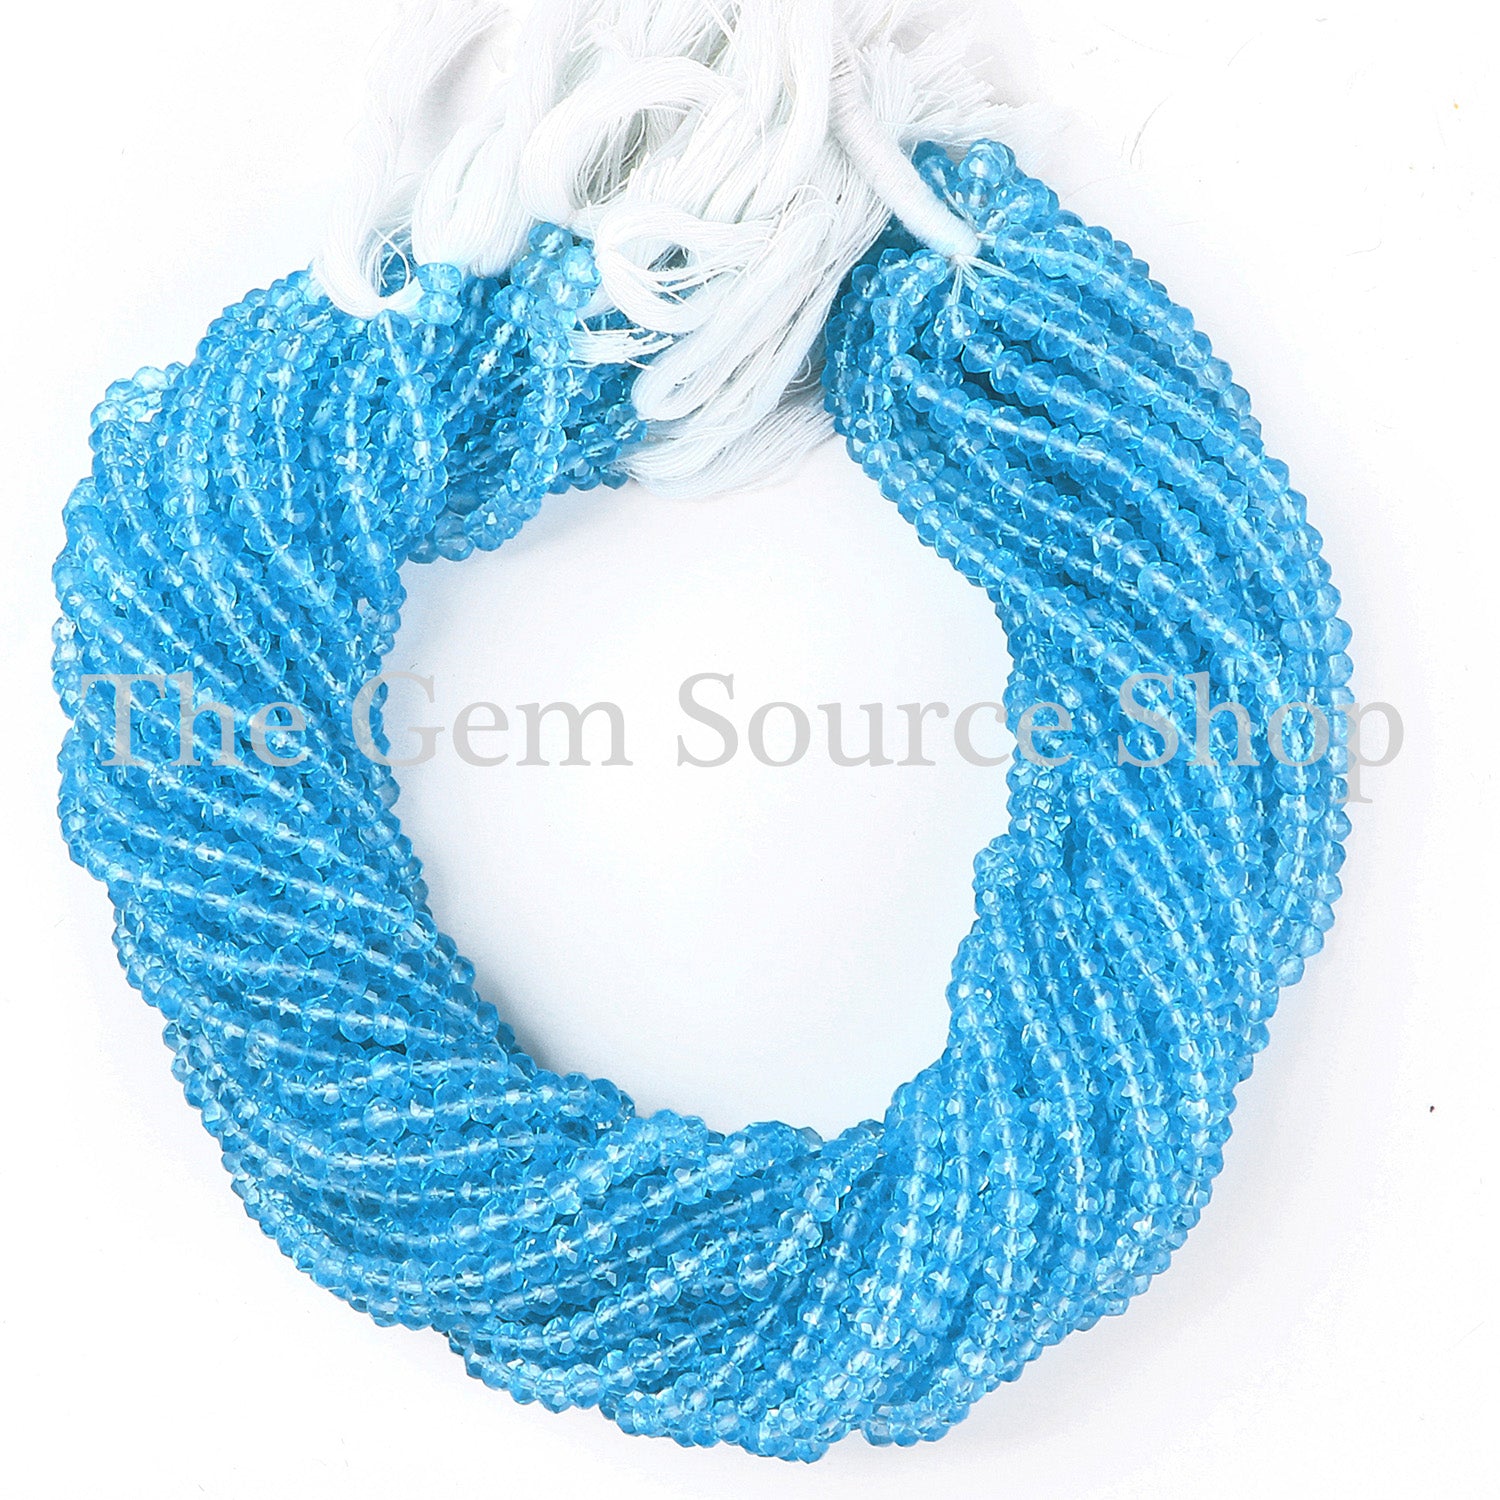 Sky Blue Topaz Quartz Beads, Blue Topaz Quartz Faceted Rondelle Beads, Wholesale Beads